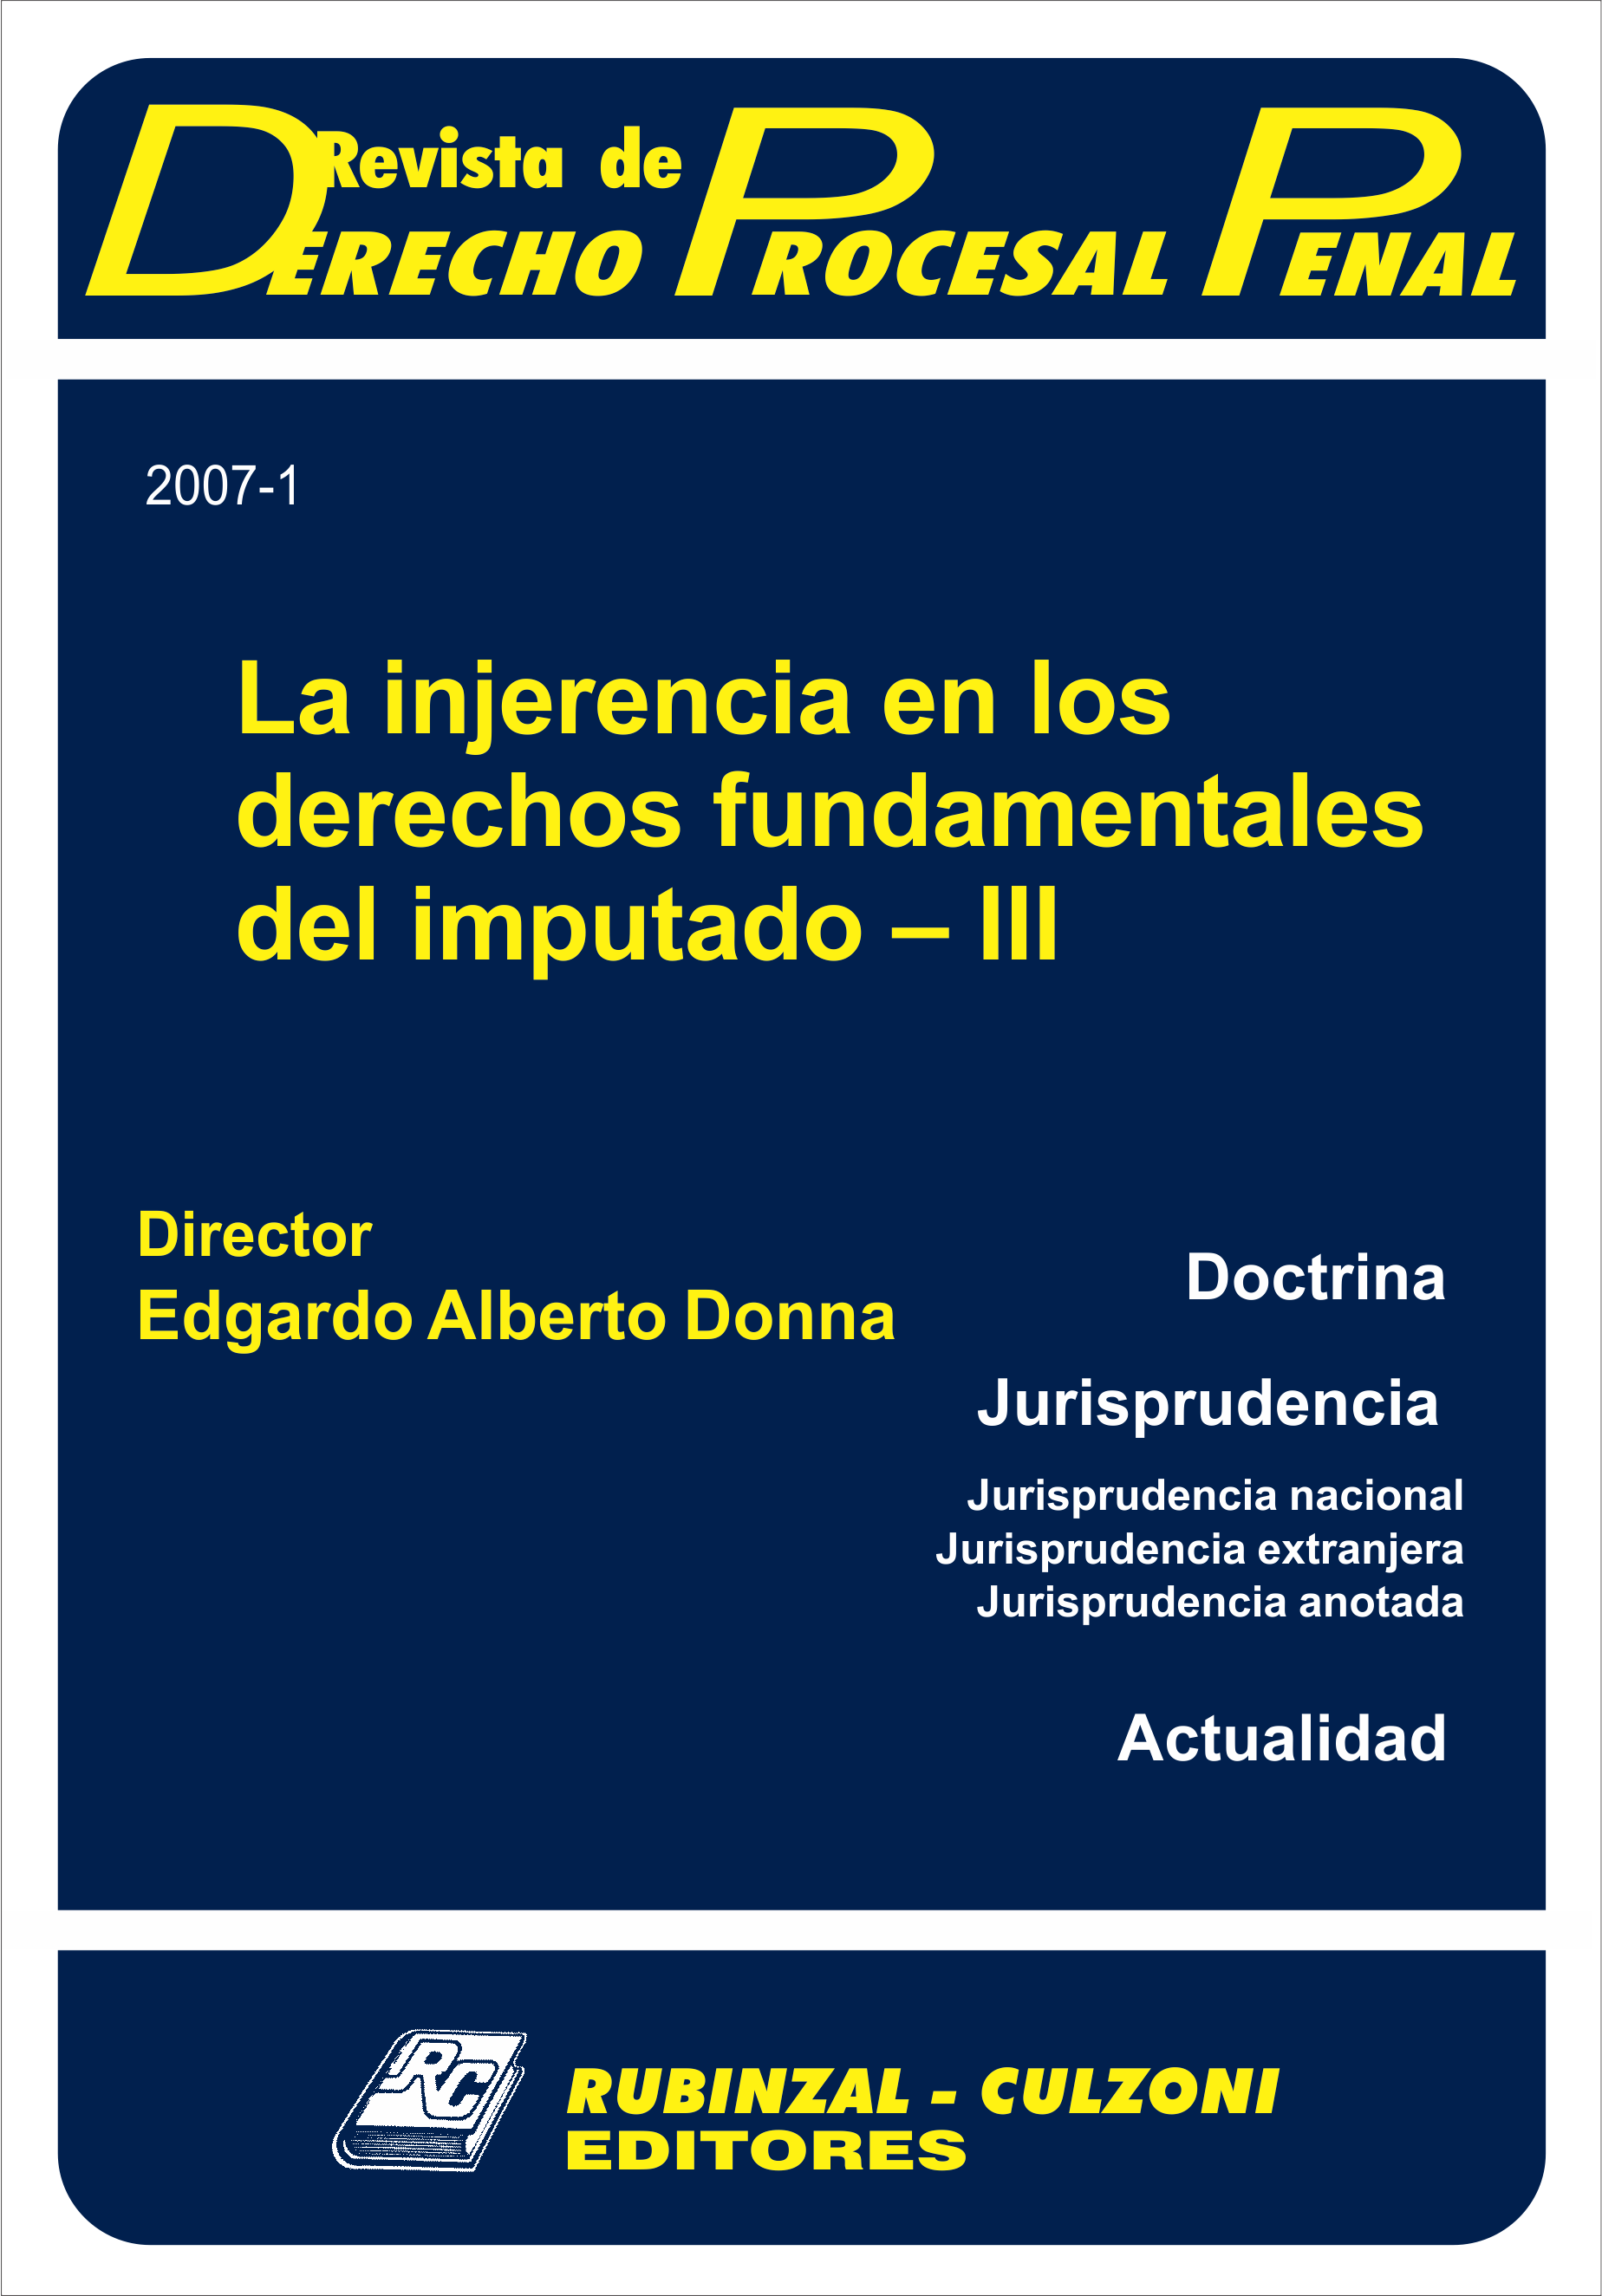 Revista de Derecho Procesal Penal - La injerencia en los derechos fundamentales del imputado - III.